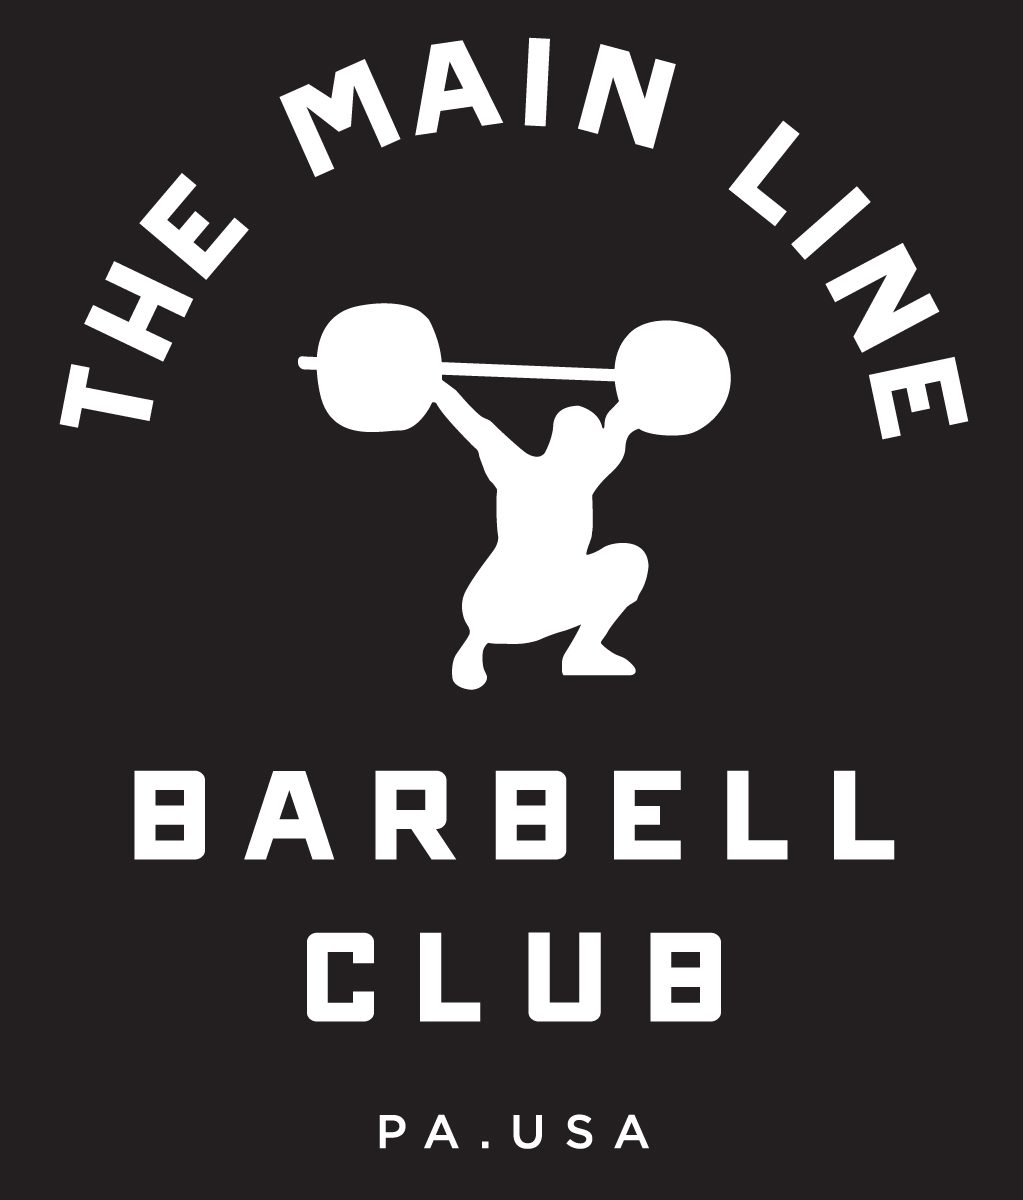 Week of 11.28.16 Barbell Club